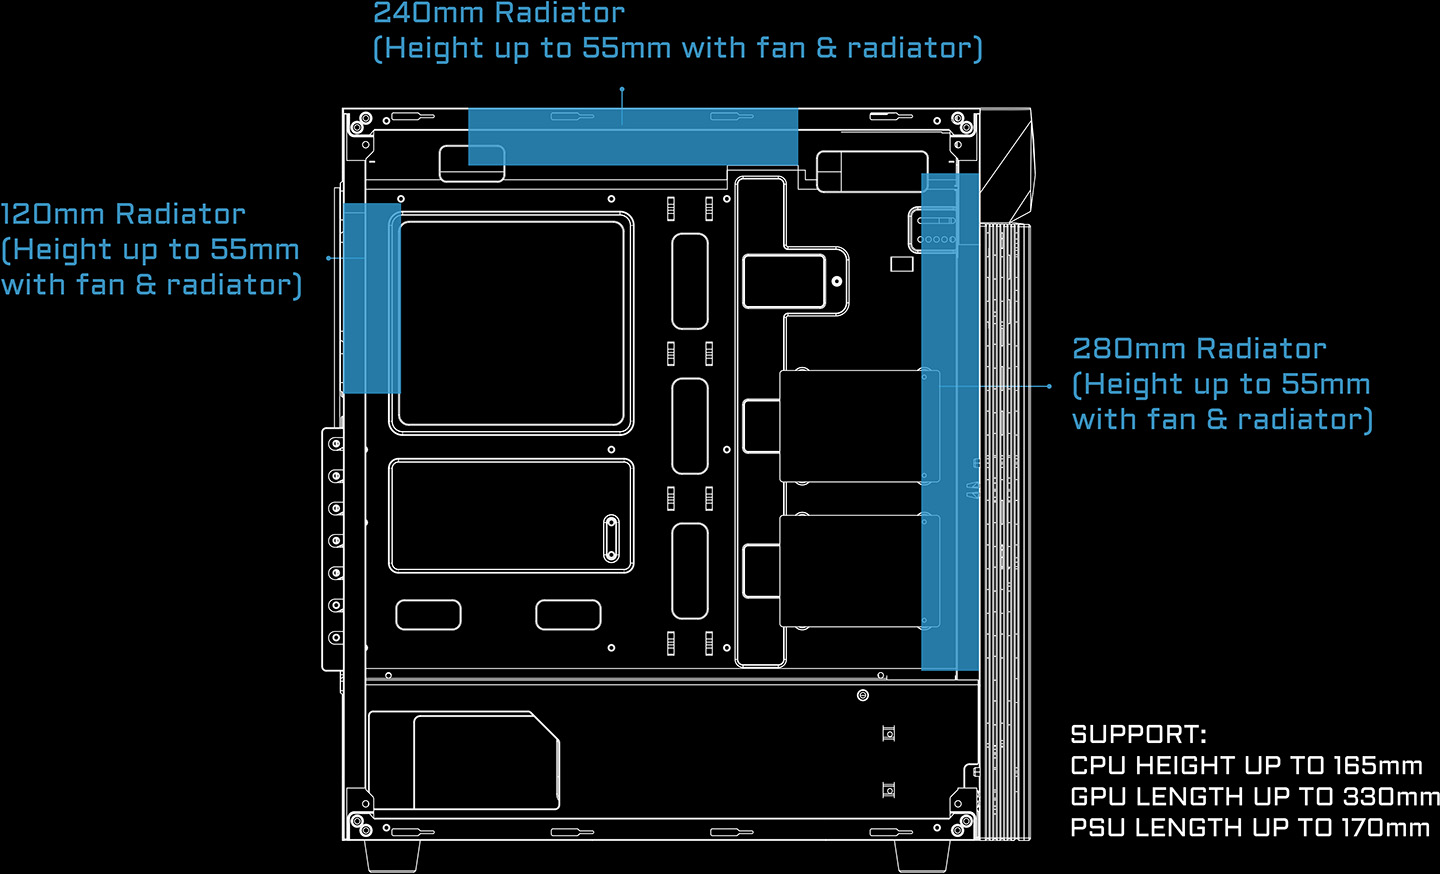 Gigabyte C200 GLASS vista lateral esquematica mostrando la compatibilidad con radiadores y componentes internos